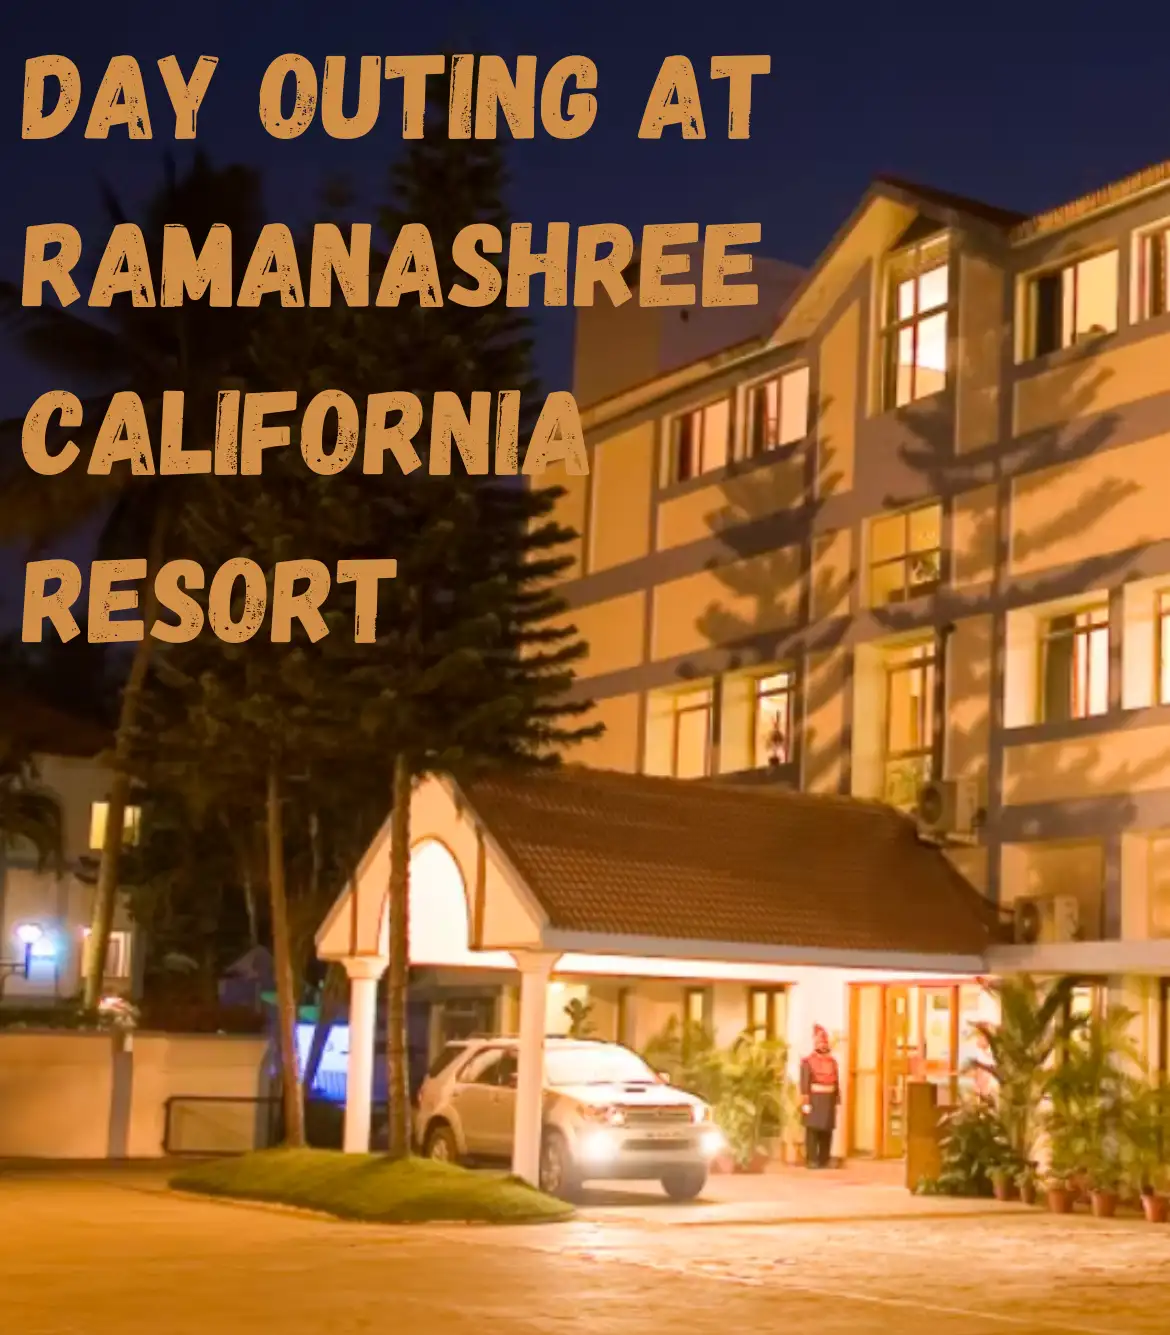 Day Outing at Ramanashree California Resort